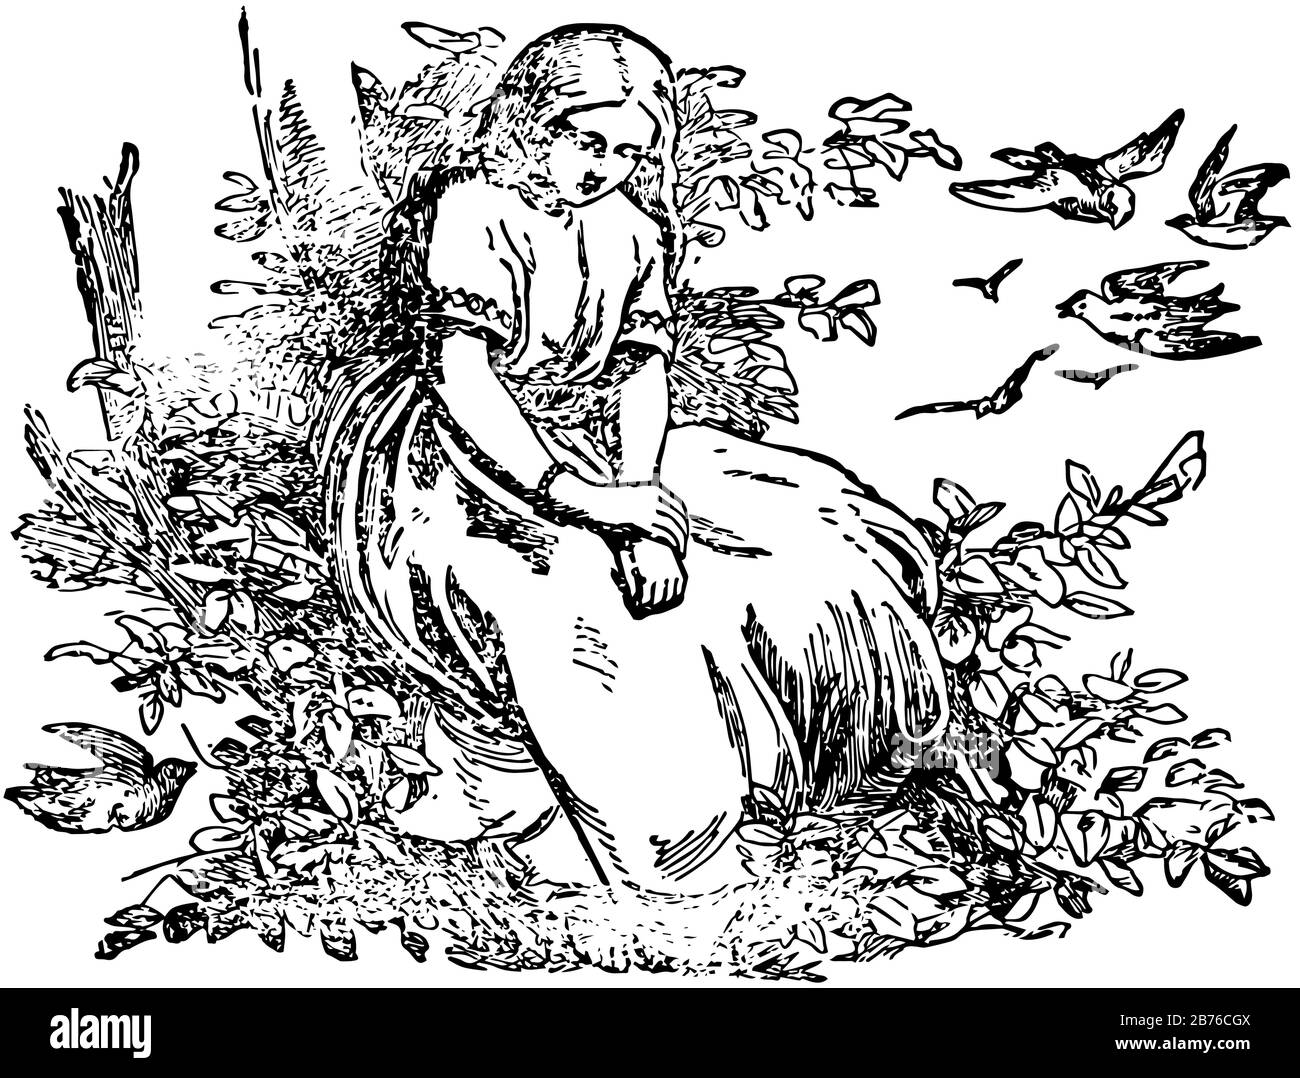 La Figlia del re di Marsh, una ragazza è seduta vicino all'albero e gli uccelli volanti in background, disegno di linea vintage o illustrazione dell'incisione Illustrazione Vettoriale